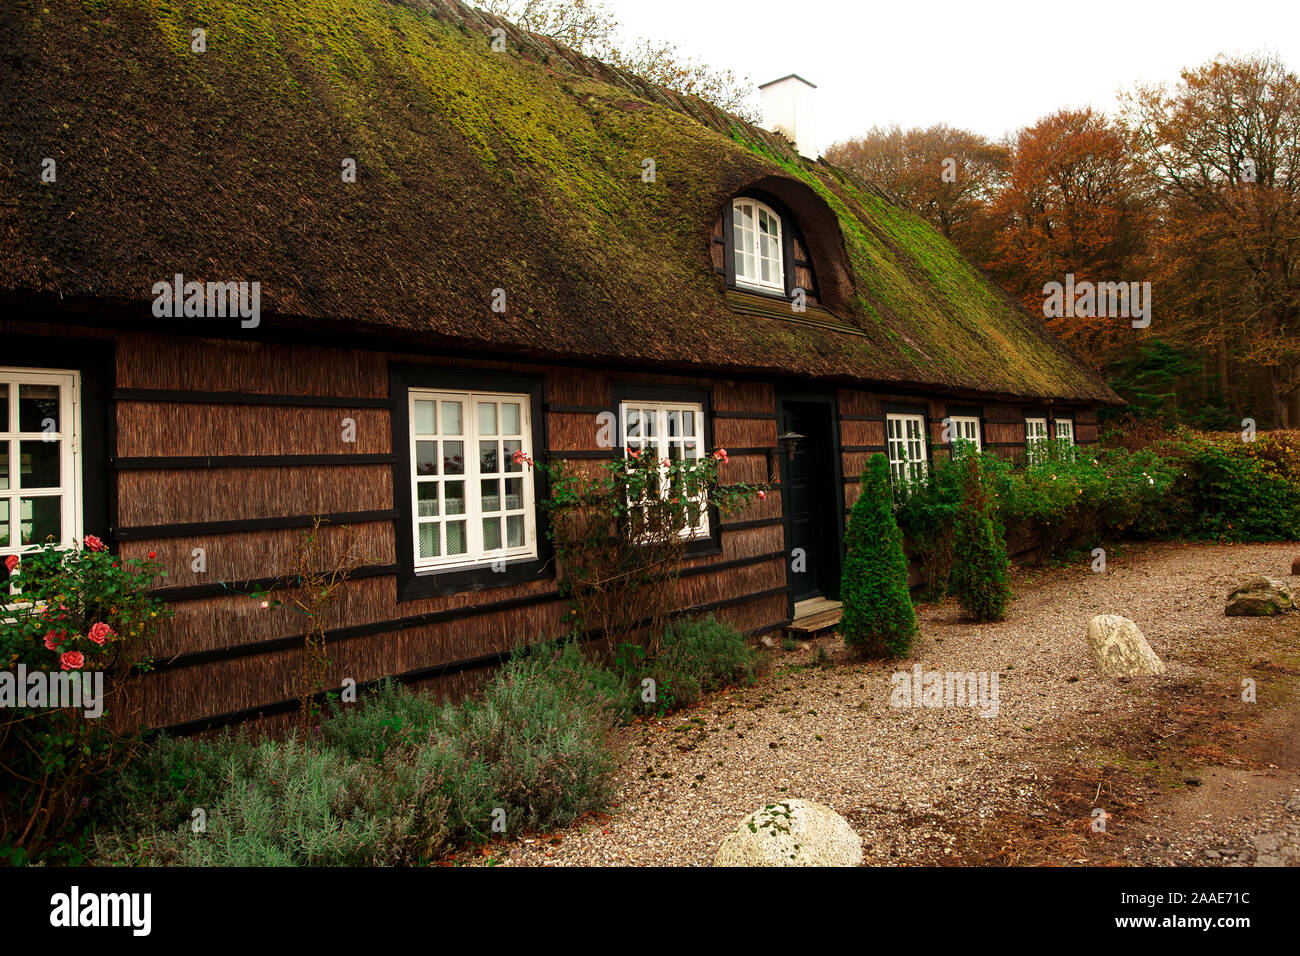 Traditionelle Danische Bauernhof Oder Der Landlichen Landwirtschaft Gebaude Architektur Aus Danemark In Der Landschaft Stockfotografie Alamy